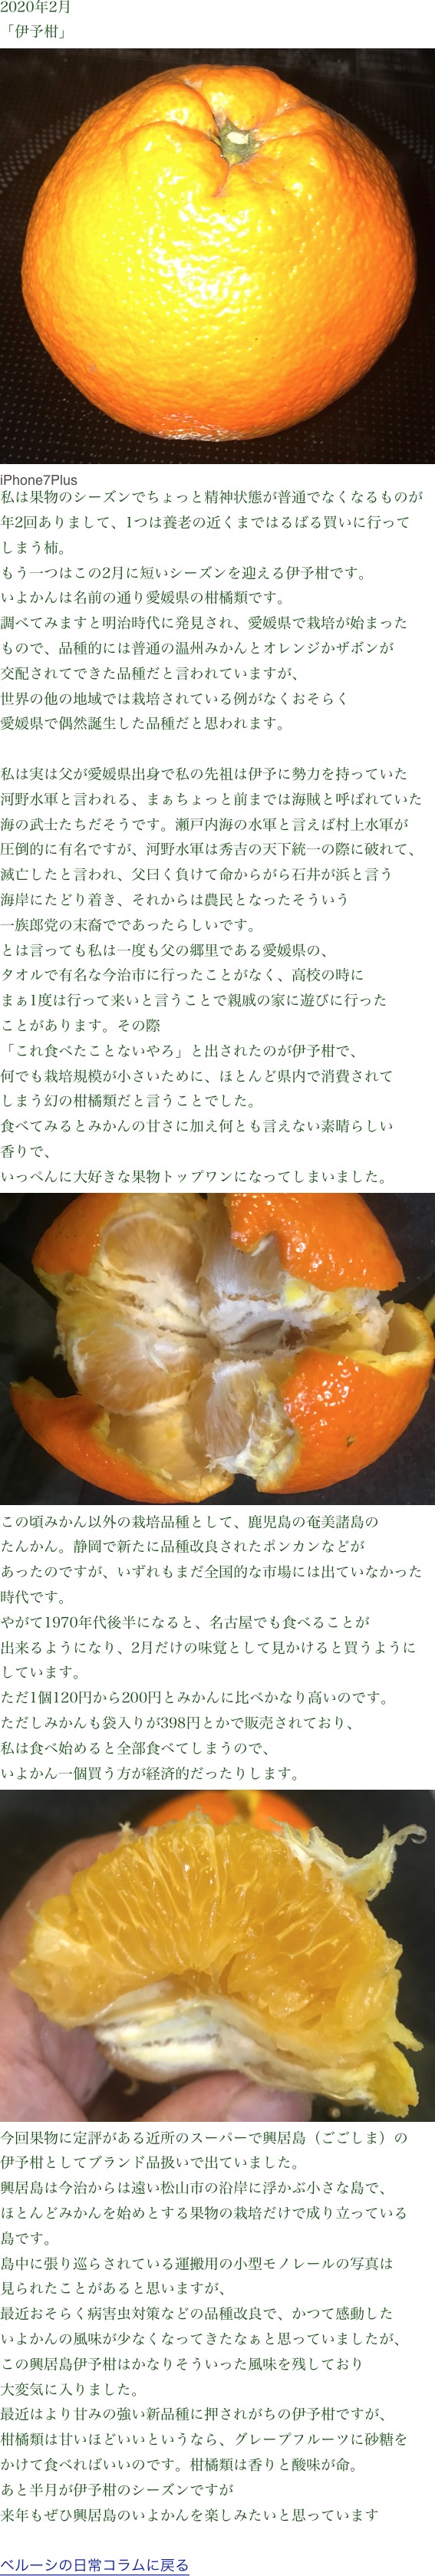 2020年2月
「伊予柑」
￼
iPhone7Plus
私は果物のシーズンでちょっと精神状態が普通でなくなるものが
年2回ありまして、1つは養老の近くまではるばる買いに行って
しまう柿。もう一つはこの2月に短いシーズンを迎える伊予柑です。
いよかんは名前の通り愛媛県の柑橘類です。調べてみますと明治時代に発見され、愛媛県で栽培が始まった
もので、品種的には普通の温州みかんとオレンジかザボンが
交配されてできた品種だと言われていますが、
世界の他の地域では栽培されている例がなくおそらく
愛媛県で偶然誕生した品種だと思われます。私は実は父が愛媛県出身で私の先祖は伊予に勢力を持っていた
河野水軍と言われる、まぁちょっと前までは海賊と呼ばれていた
海の武士たちだそうです。瀬戸内海の水軍と言えば村上水軍が
圧倒的に有名ですが、河野水軍は秀吉の天下統一の際に破れて、
滅亡したと言われ、父曰く負けて命からがら石井が浜と言う
海岸にたどり着き、それからは農民となったそういう
一族郎党の末裔でであったらしいです。とは言っても私は一度も父の郷里である愛媛県の、
タオルで有名な今治市に行ったことがなく、高校の時に
まぁ1度は行って来いと言うことで親戚の家に遊びに行った
ことがあります。その際「これ食べたことないやろ」と出されたのが伊予柑で、
何でも栽培規模が小さいために、ほとんど県内で消費されて
しまう幻の柑橘類だと言うことでした。食べてみるとみかんの甘さに加え何とも言えない素晴らしい
香りで、
いっぺんに大好きな果物トップワンになってしまいました。￼この頃みかん以外の栽培品種として、鹿児島の奄美諸島の
たんかん。静岡で新たに品種改良されたポンカンなどが
あったのですが、いずれもまだ全国的な市場には出ていなかった
時代です。やがて1970年代後半になると、名古屋でも食べることが
出来るようになり、2月だけの味覚として見かけると買うように
しています。ただ1個120円から200円とみかんに比べかなり高いのです。
ただしみかんも袋入りが398円とかで販売されており、
私は食べ始めると全部食べてしまうので、
いよかん一個買う方が経済的だったりします。￼今回果物に定評がある近所のスーパーで興居島（ごごしま）の
伊予柑としてブランド品扱いで出ていました。興居島は今治からは遠い松山市の沿岸に浮かぶ小さな島で、
ほとんどみかんを始めとする果物の栽培だけで成り立っている
島です。島中に張り巡らされている運搬用の小型モノレールの写真は
見られたことがあると思いますが、最近おそらく病害虫対策などの品種改良で、かつて感動した
いよかんの風味が少なくなってきたなぁと思っていましたが、
この興居島伊予柑はかなりそういった風味を残しており
大変気に入りました。最近はより甘みの強い新品種に押されがちの伊予柑ですが、
柑橘類は甘いほどいいというなら、グレープフルーツに砂糖を
かけて食べればいいのです。柑橘類は香りと酸味が命。あと半月が伊予柑のシーズンですが
来年もぜひ興居島のいよかんを楽しみたいと思っていますベルーシの日常コラムに戻る

